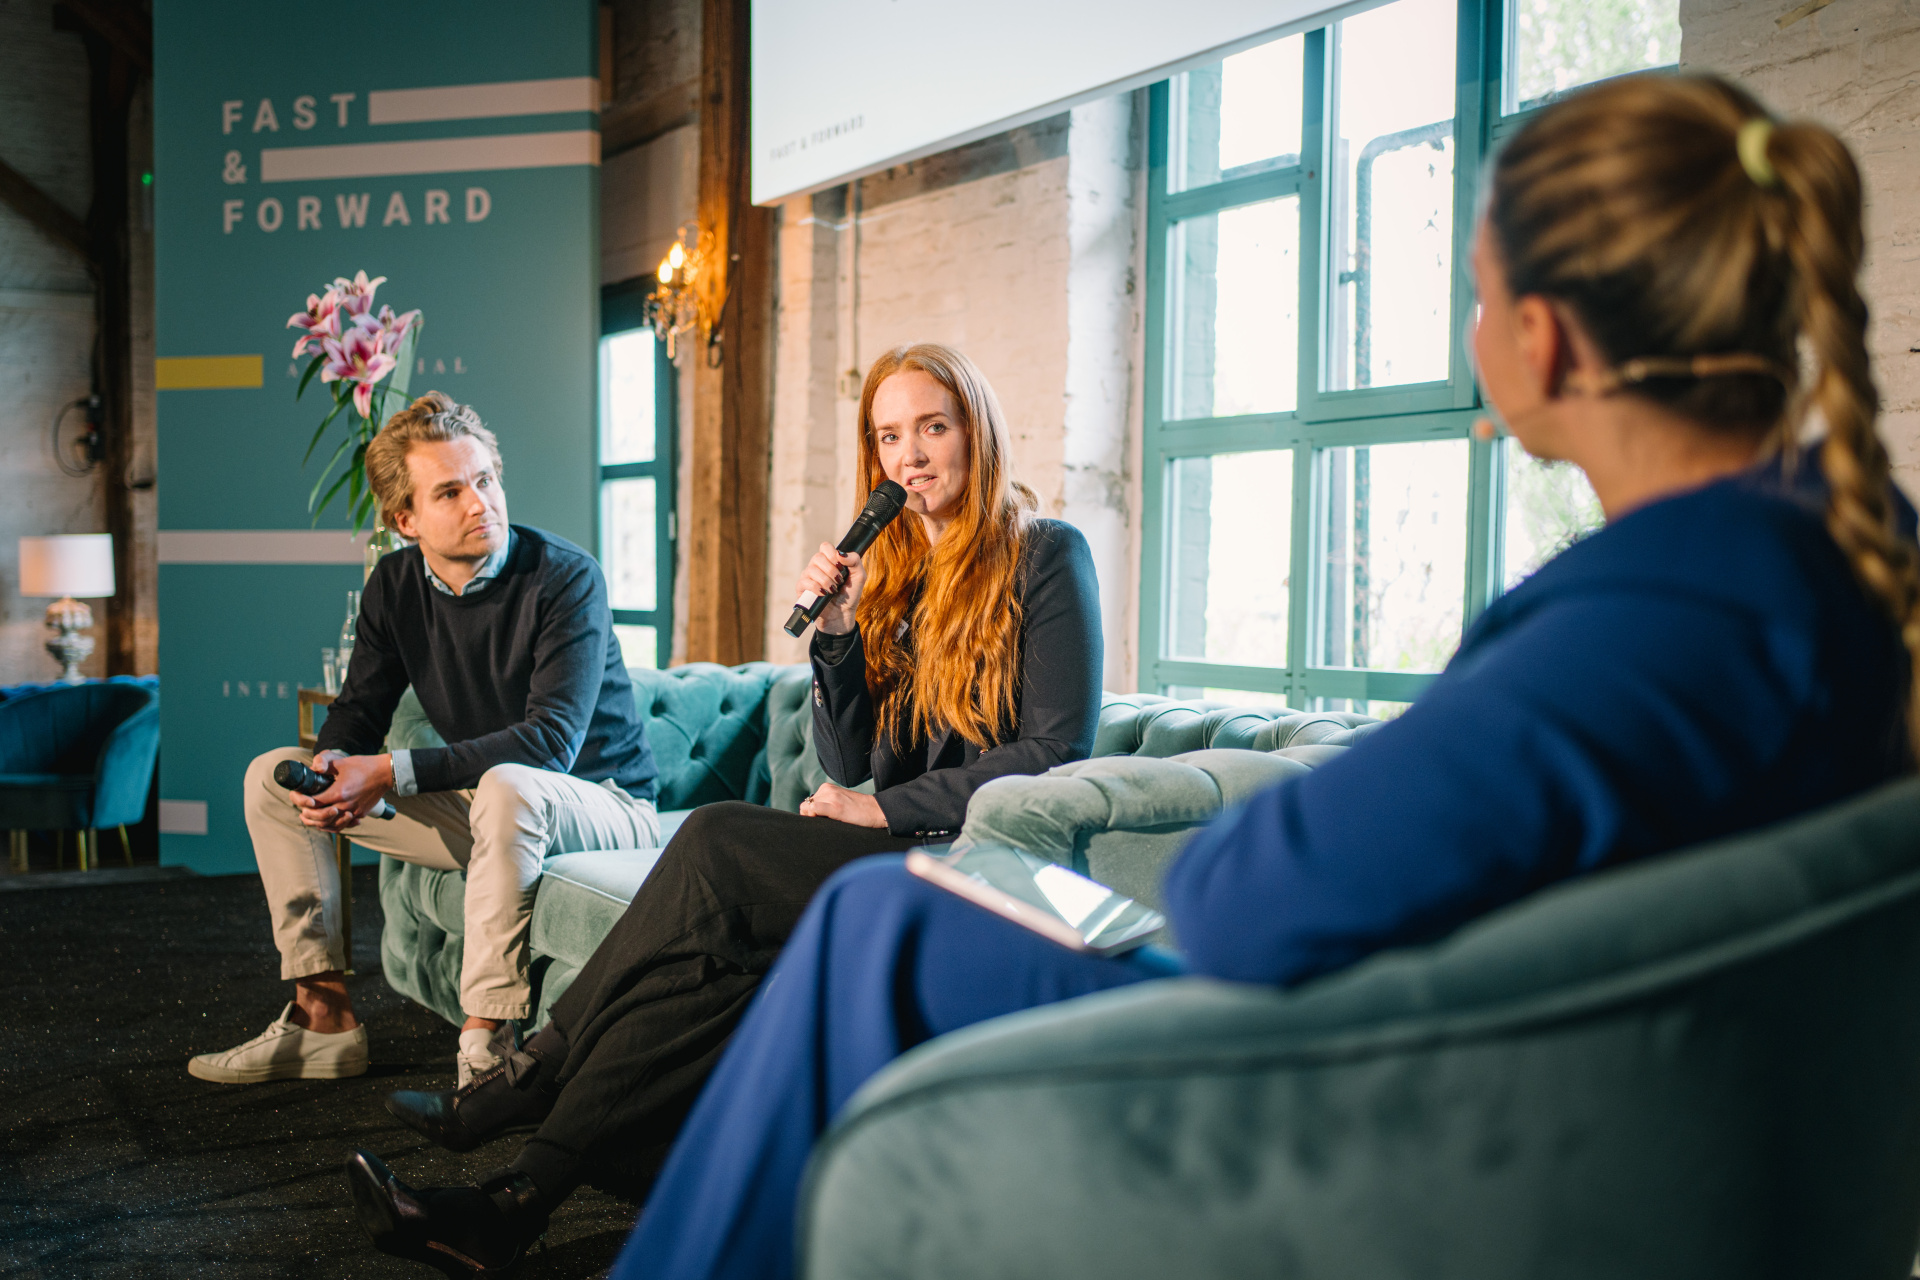 Zweites Panel: Nicolaus Schefenacker, Co-Founder von Sennder, und Elisabeth L’Orange debattierten zum Thema „Innovationsführerschaft KI: Wie Start-ups unsere Zukunft gestalten?“